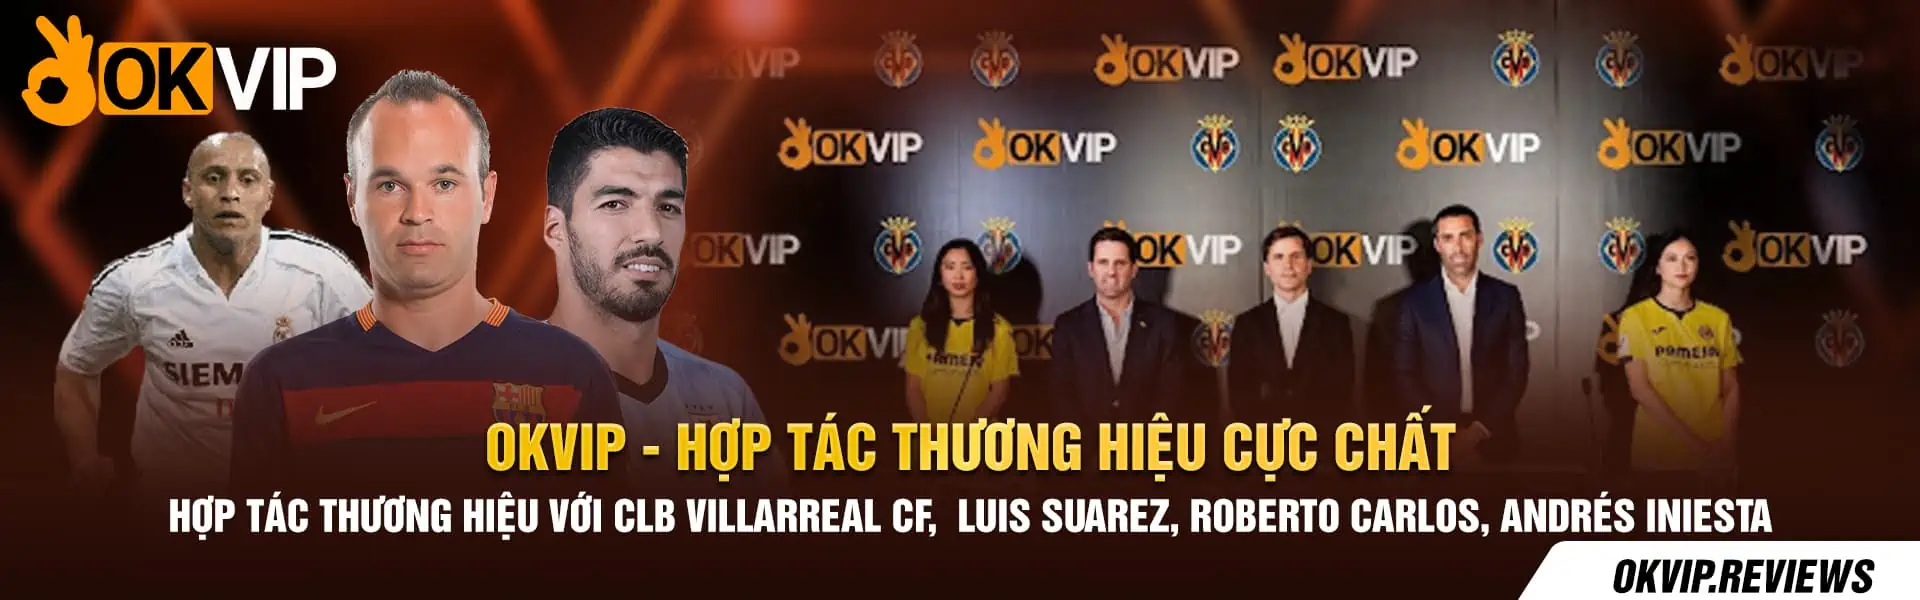 OKVIP-Hop-tac-Thuong-Hieu-cuc-chat